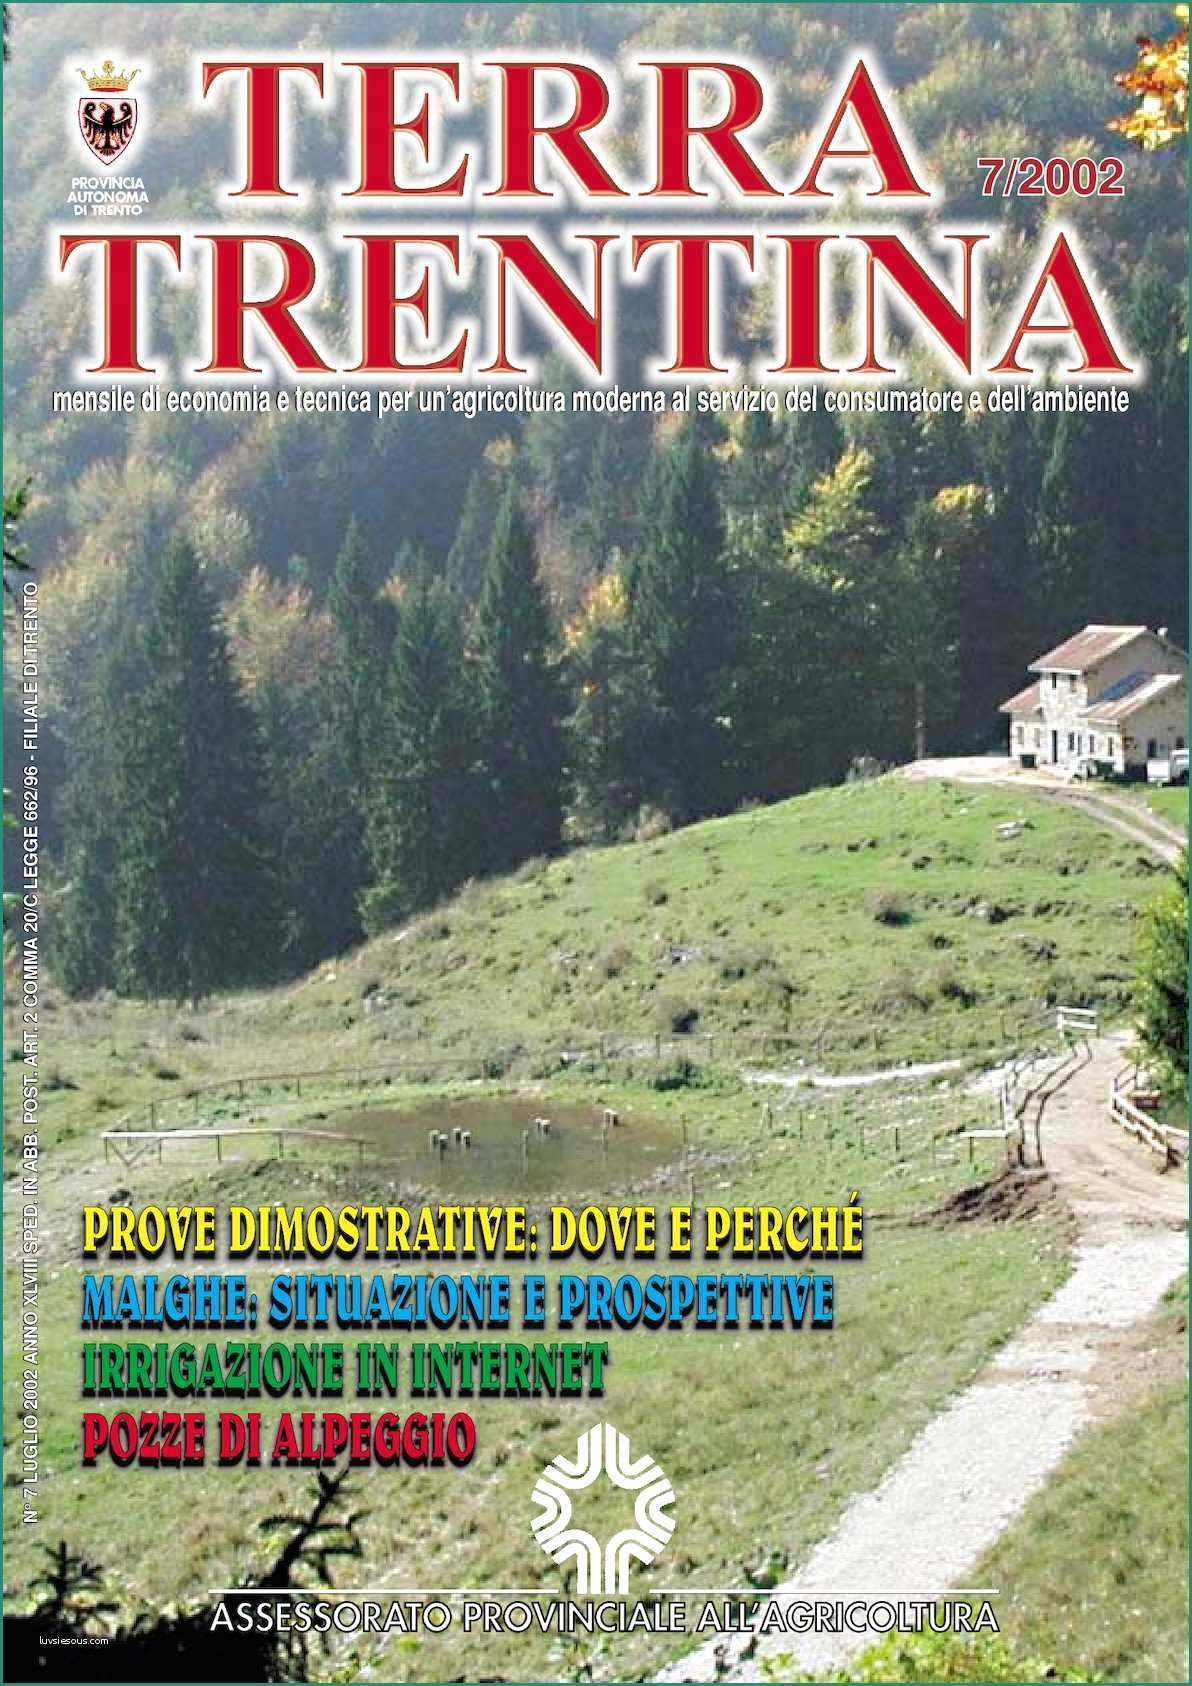 Acqua Alcalina In Bottiglia Marche E Calaméo Terra Trentina 2002 N 7